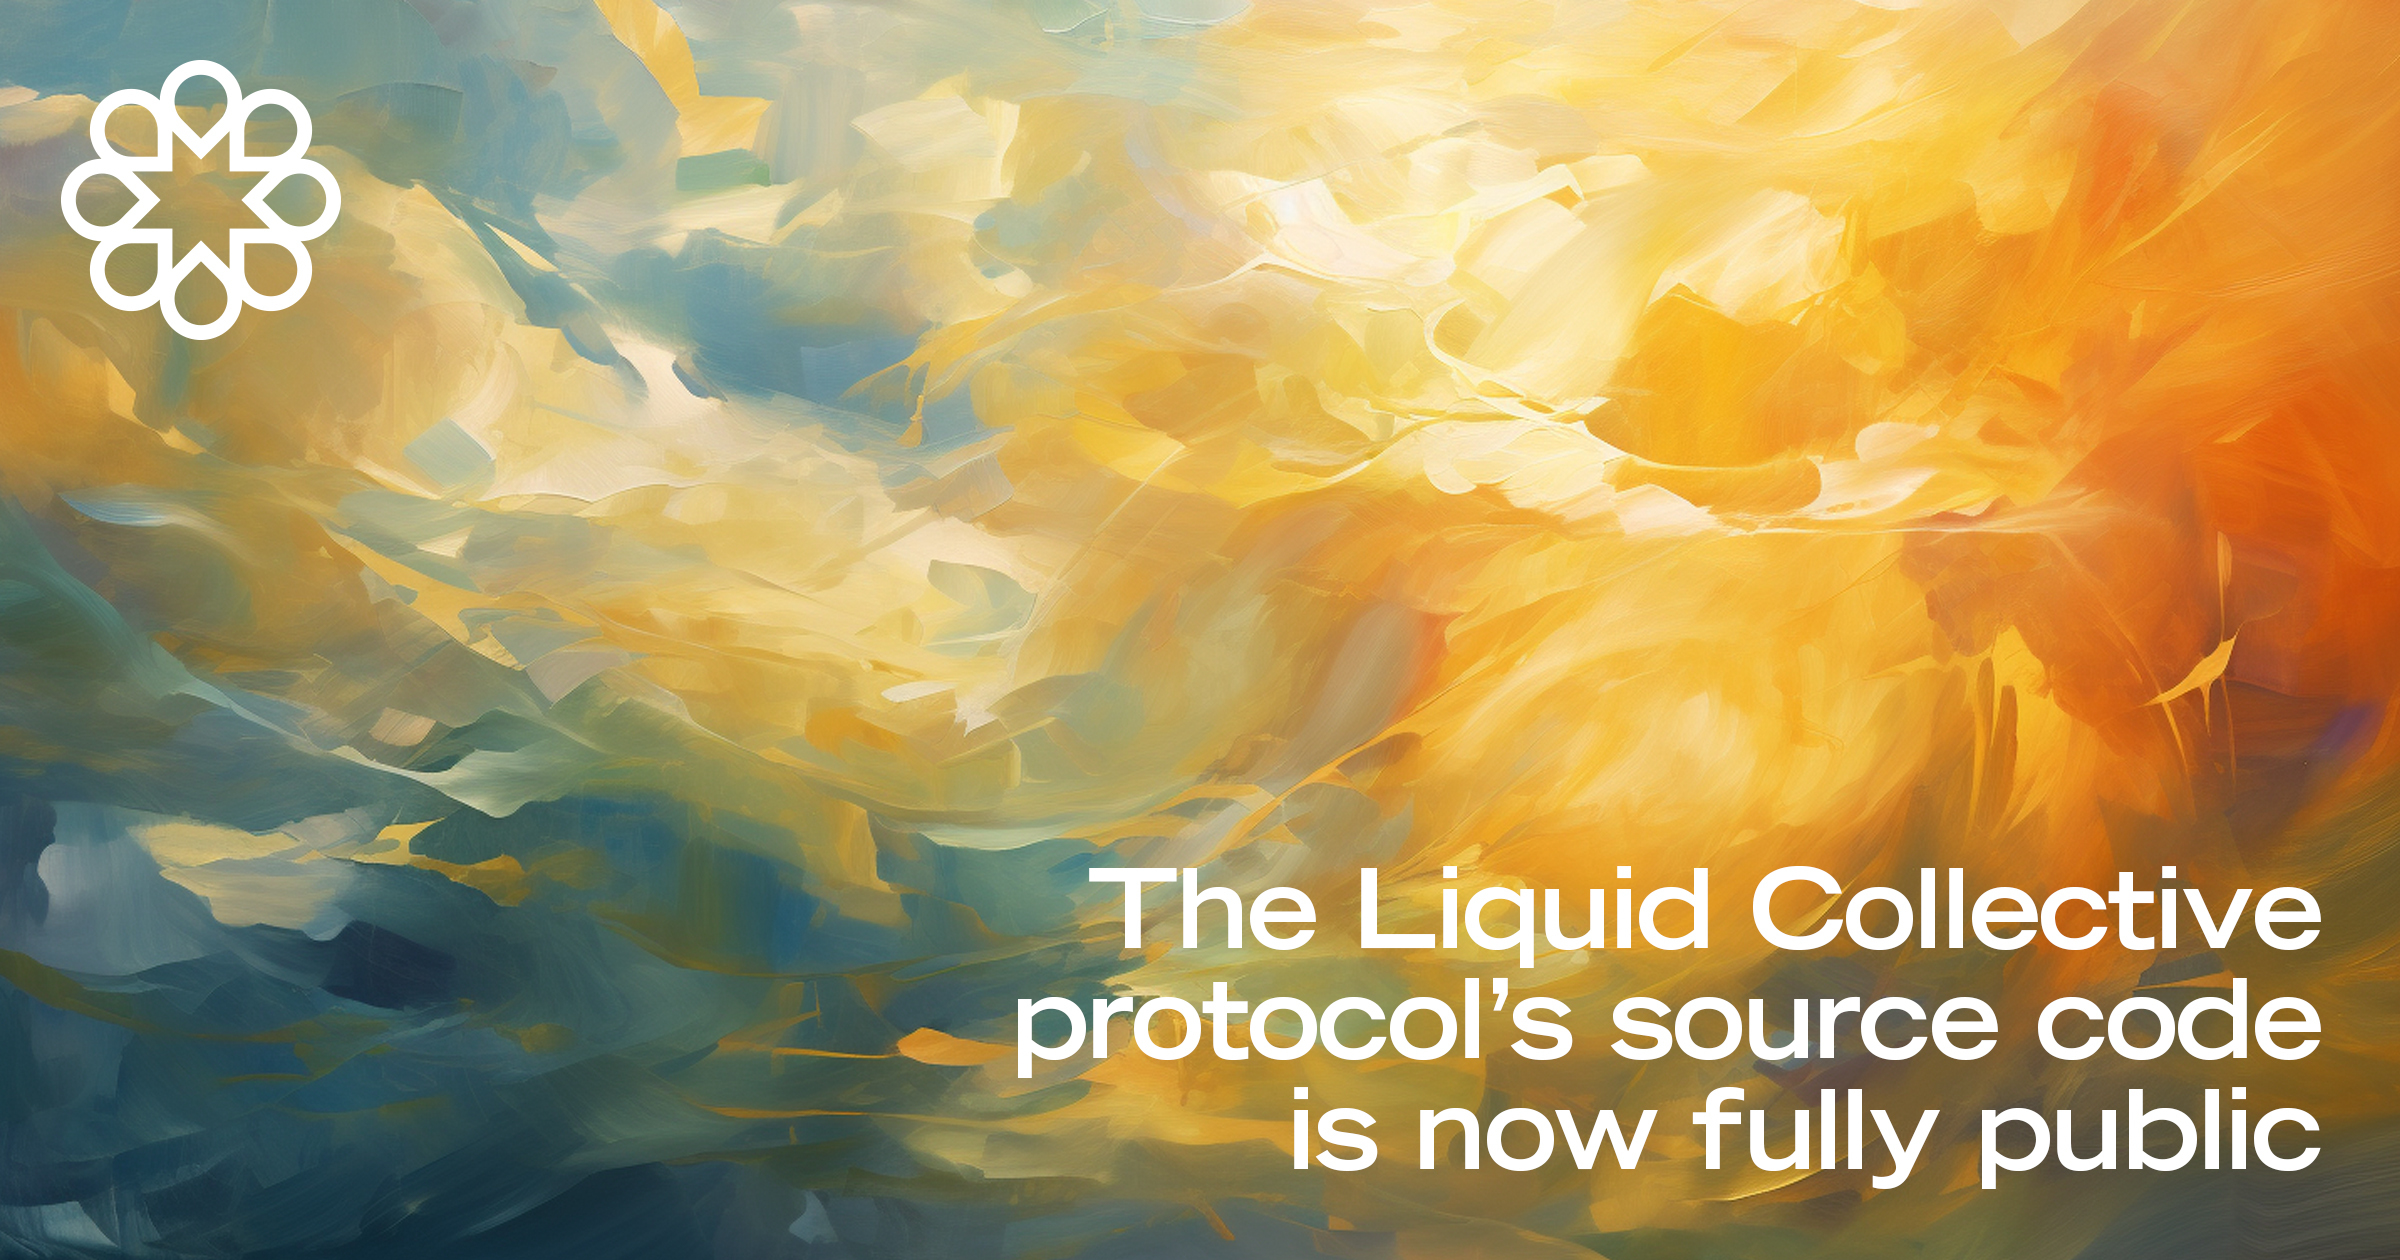 The Liquid Collective protocol